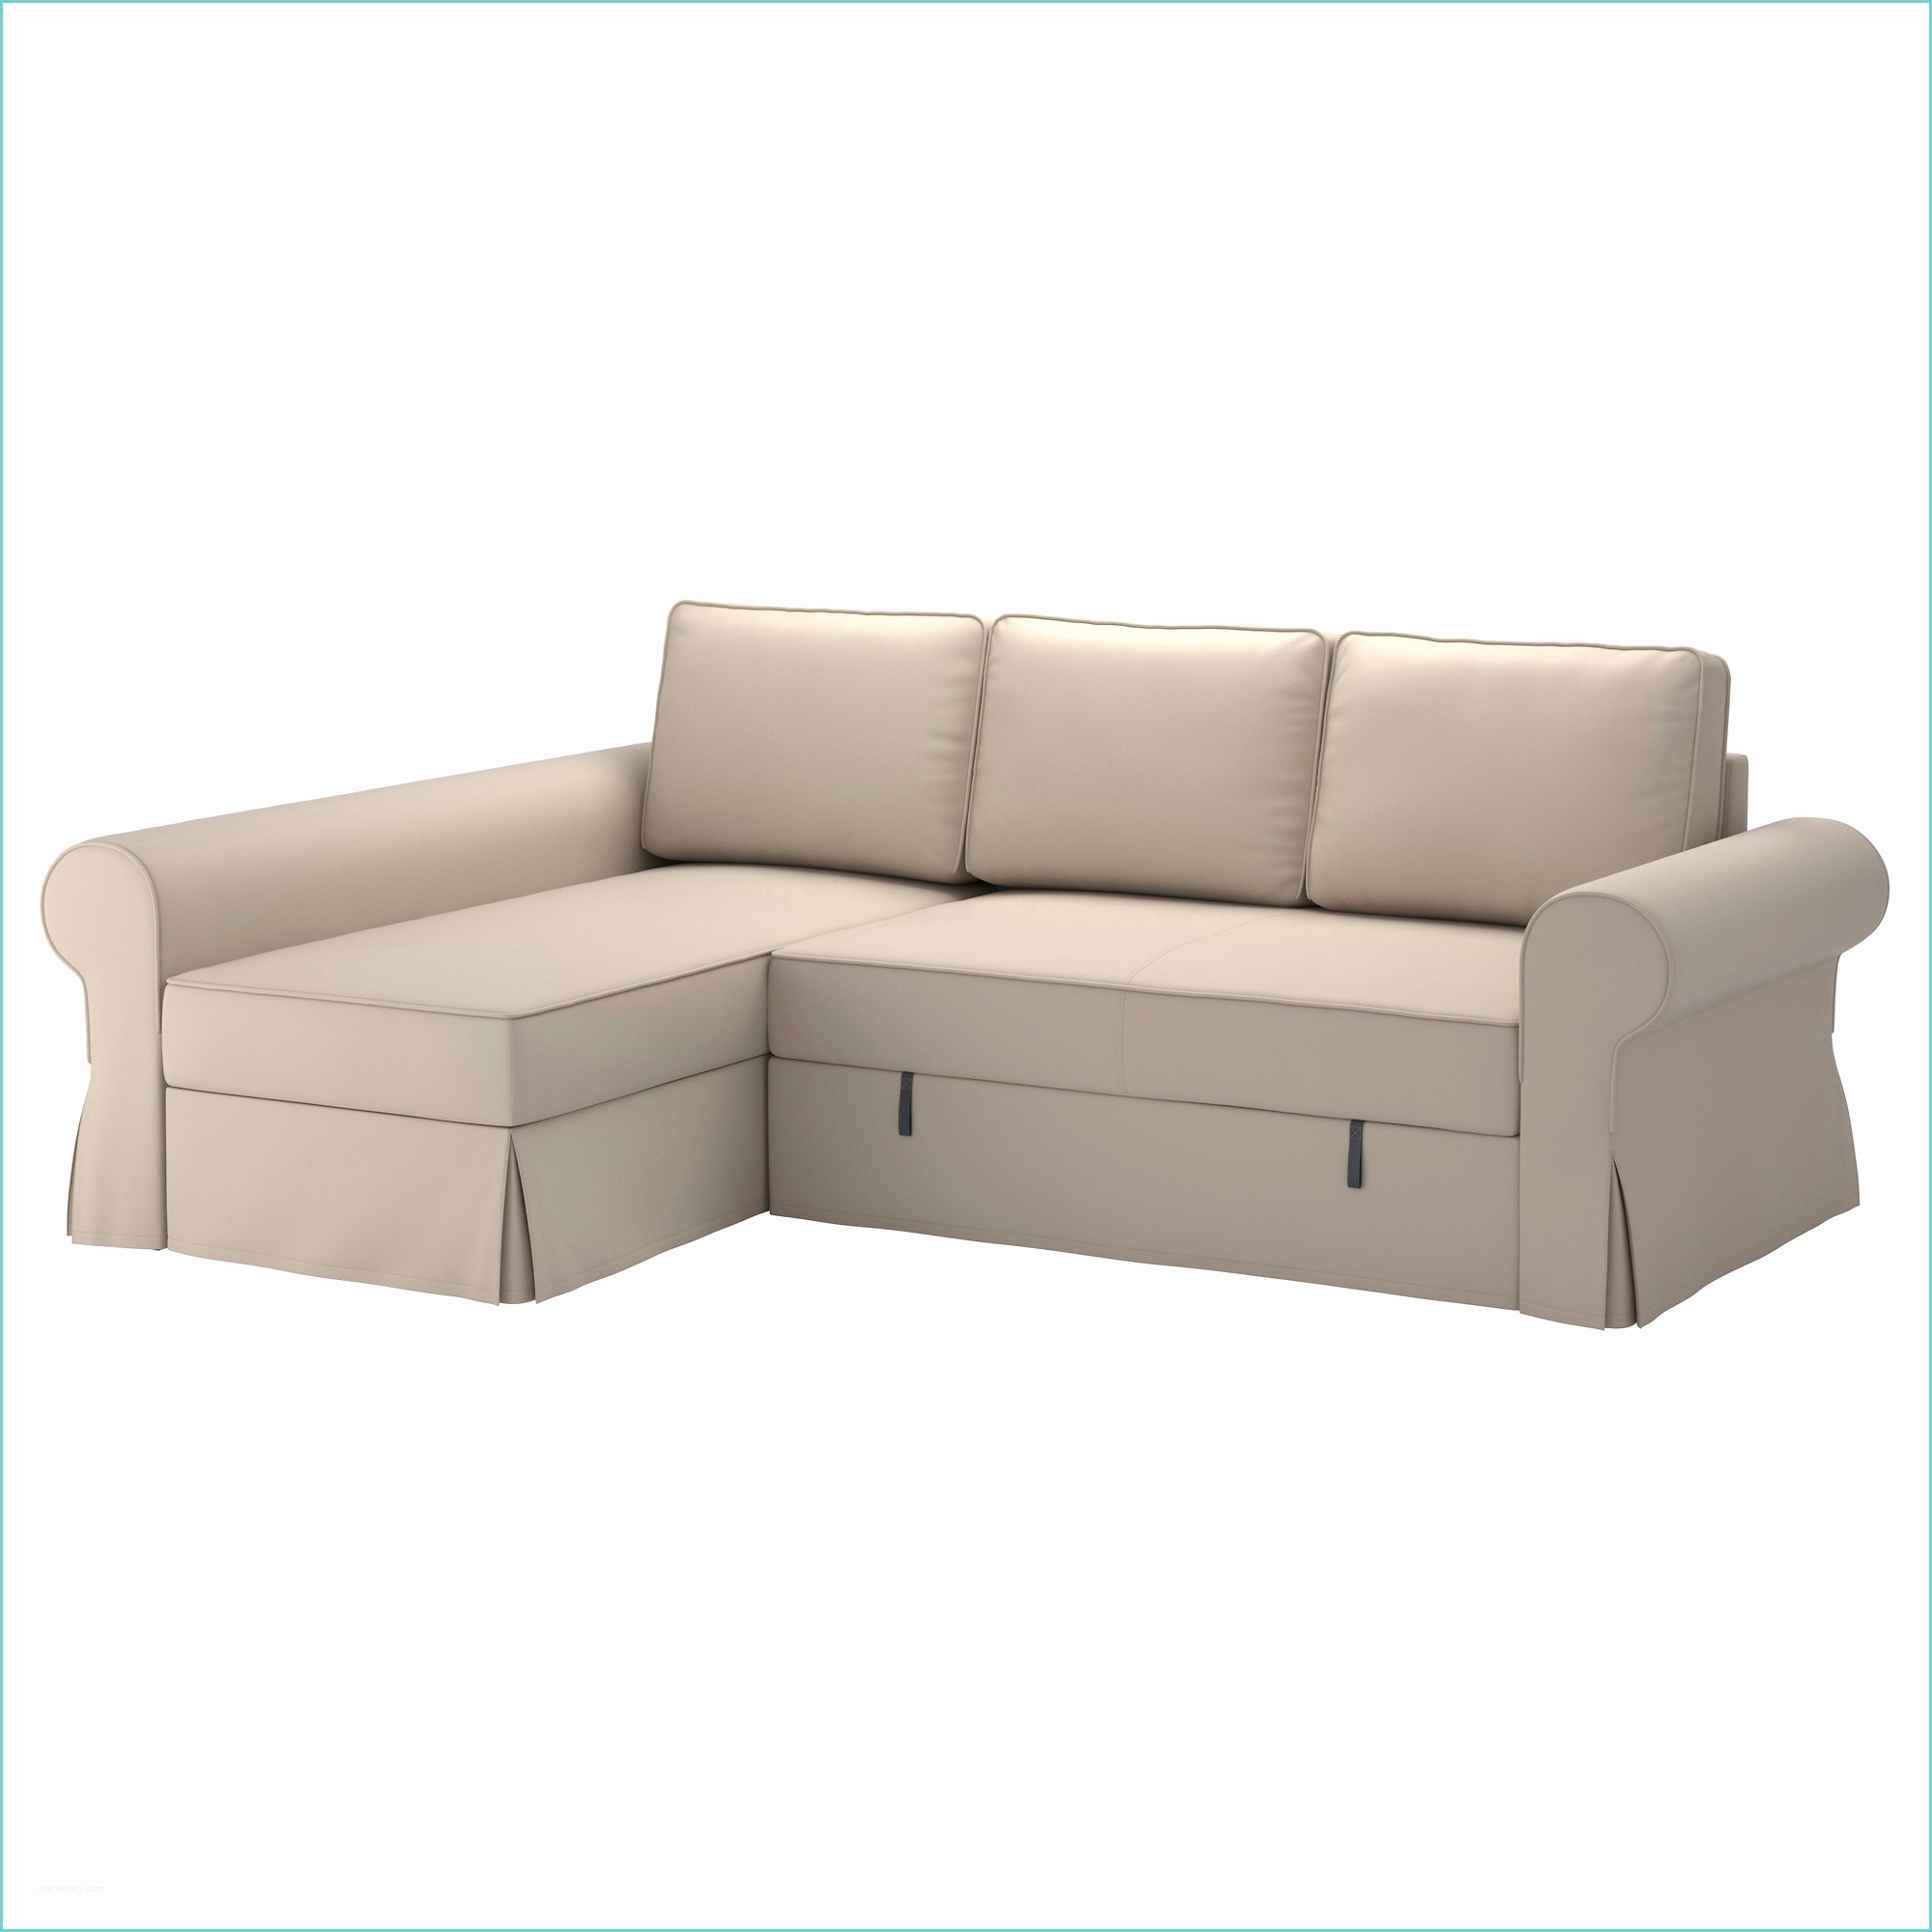 Sofa Beds In Ikea Cheap Futons Ikea